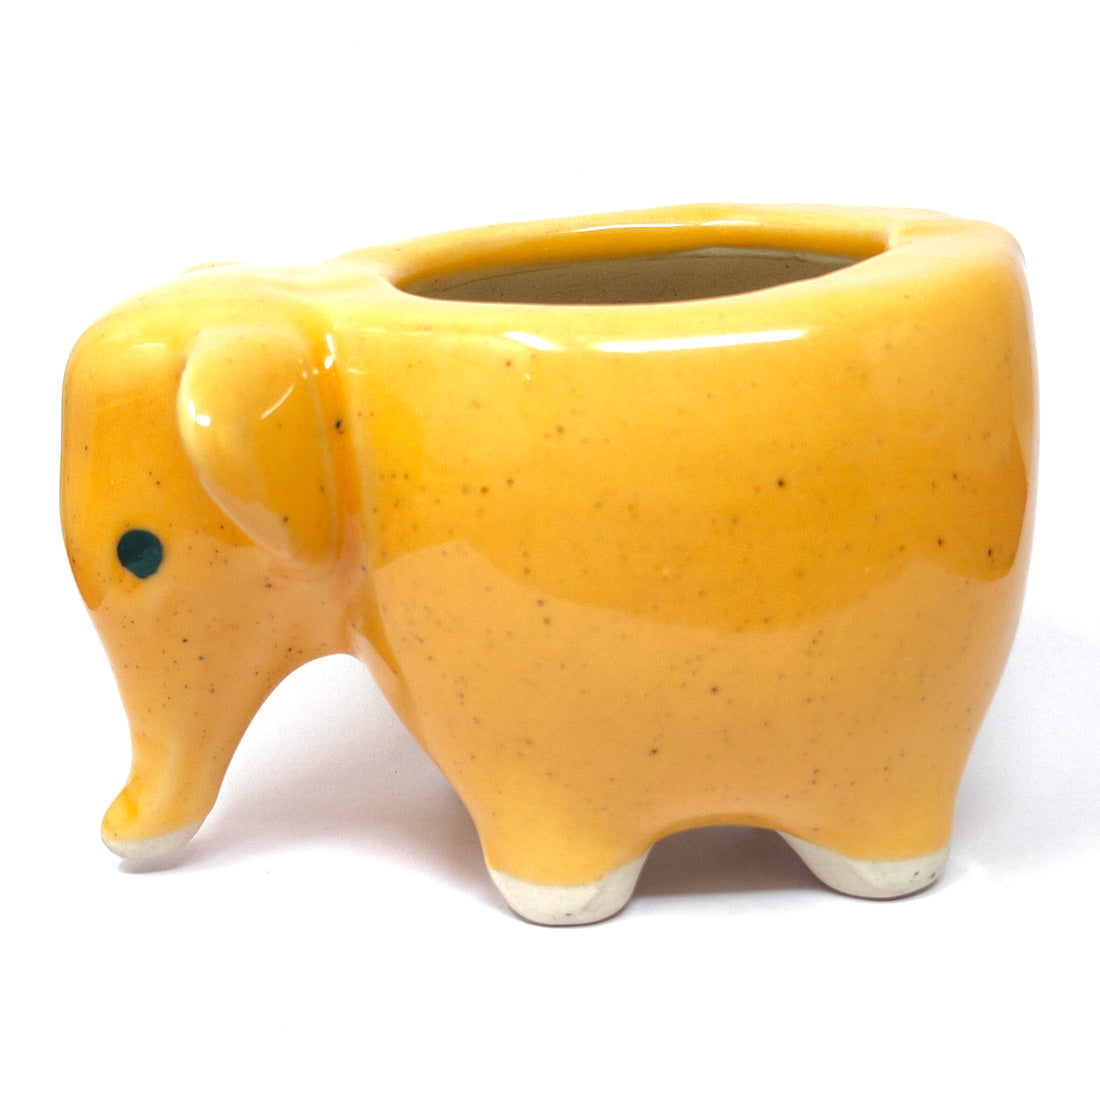 Anokhi Ada Small Elephant Design Ceramic Planters Pots for Home Decoration ( Orange, DA-002)